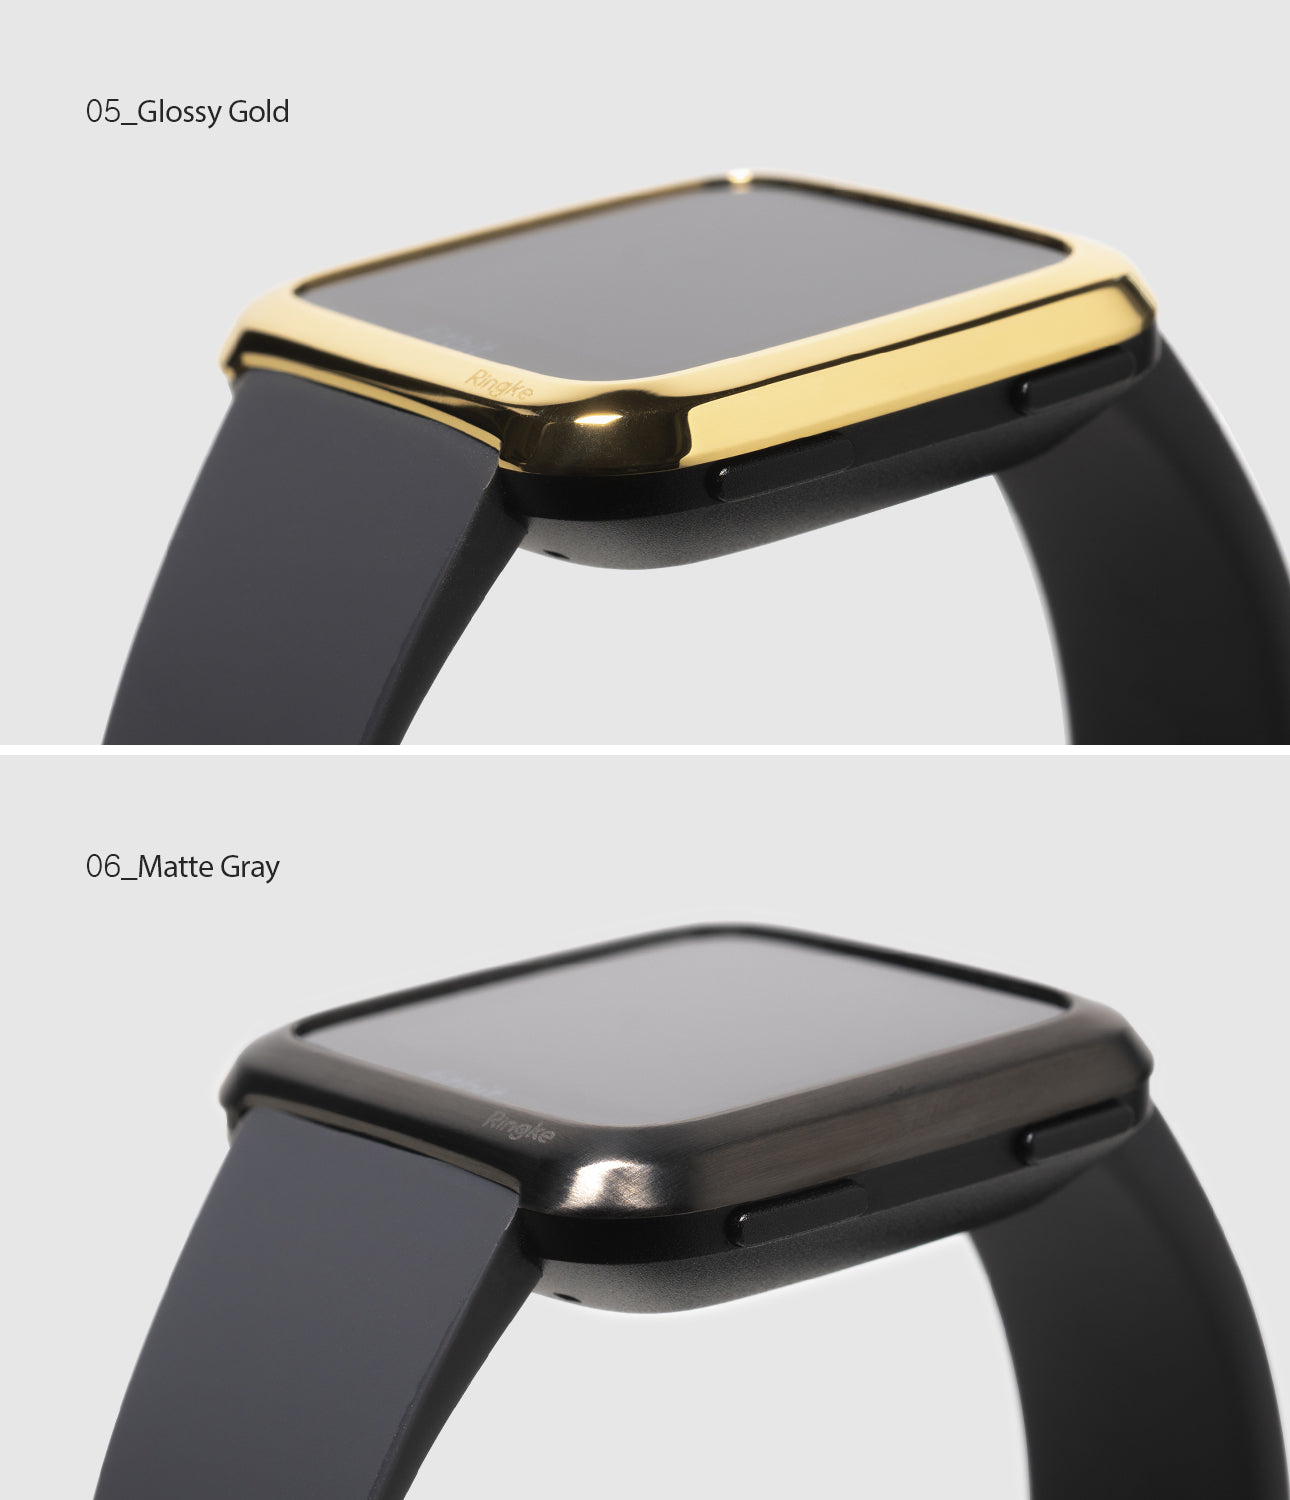 Ringke Bezel Styling Designed for Fitbit Versa Case Cover, Gray - FW-V-06, gold